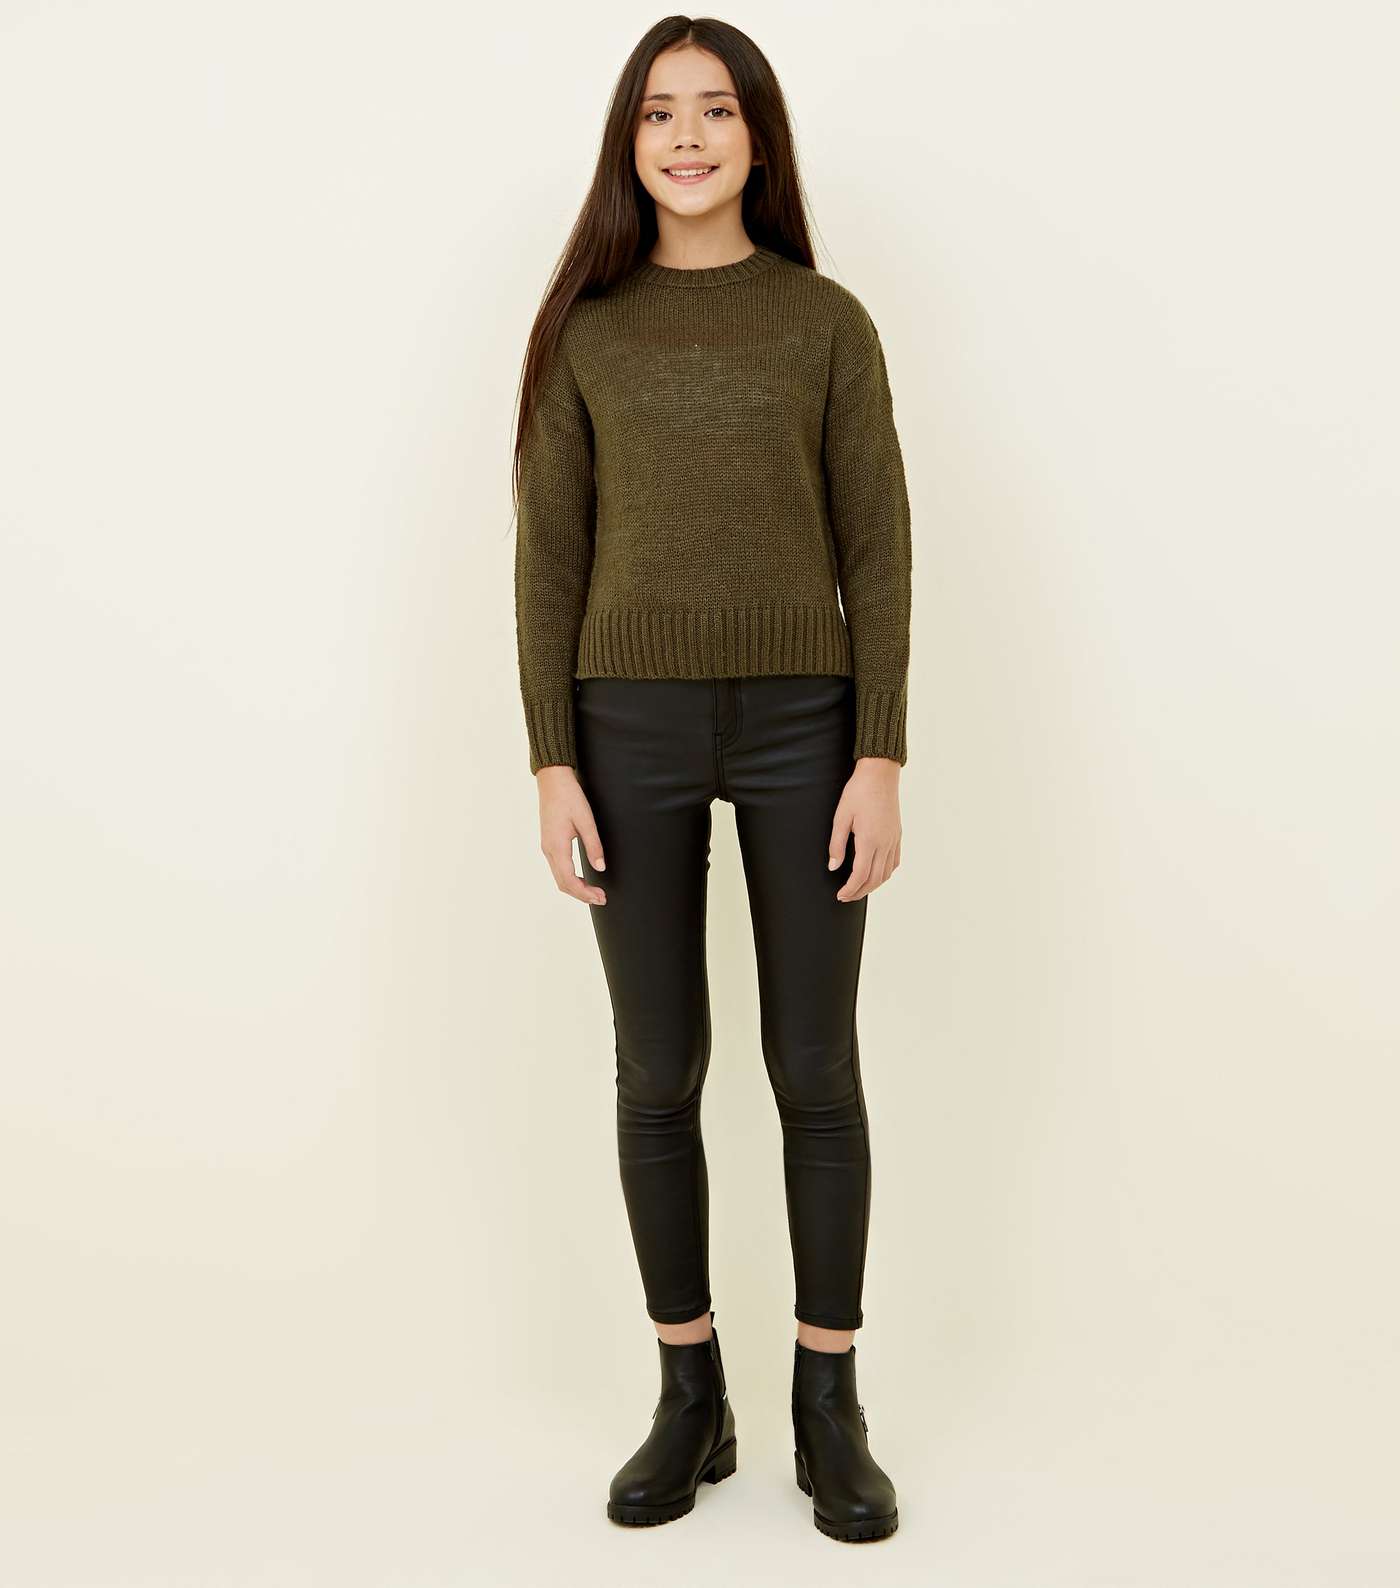 Girls Khaki Green Knitted Jumper Image 2